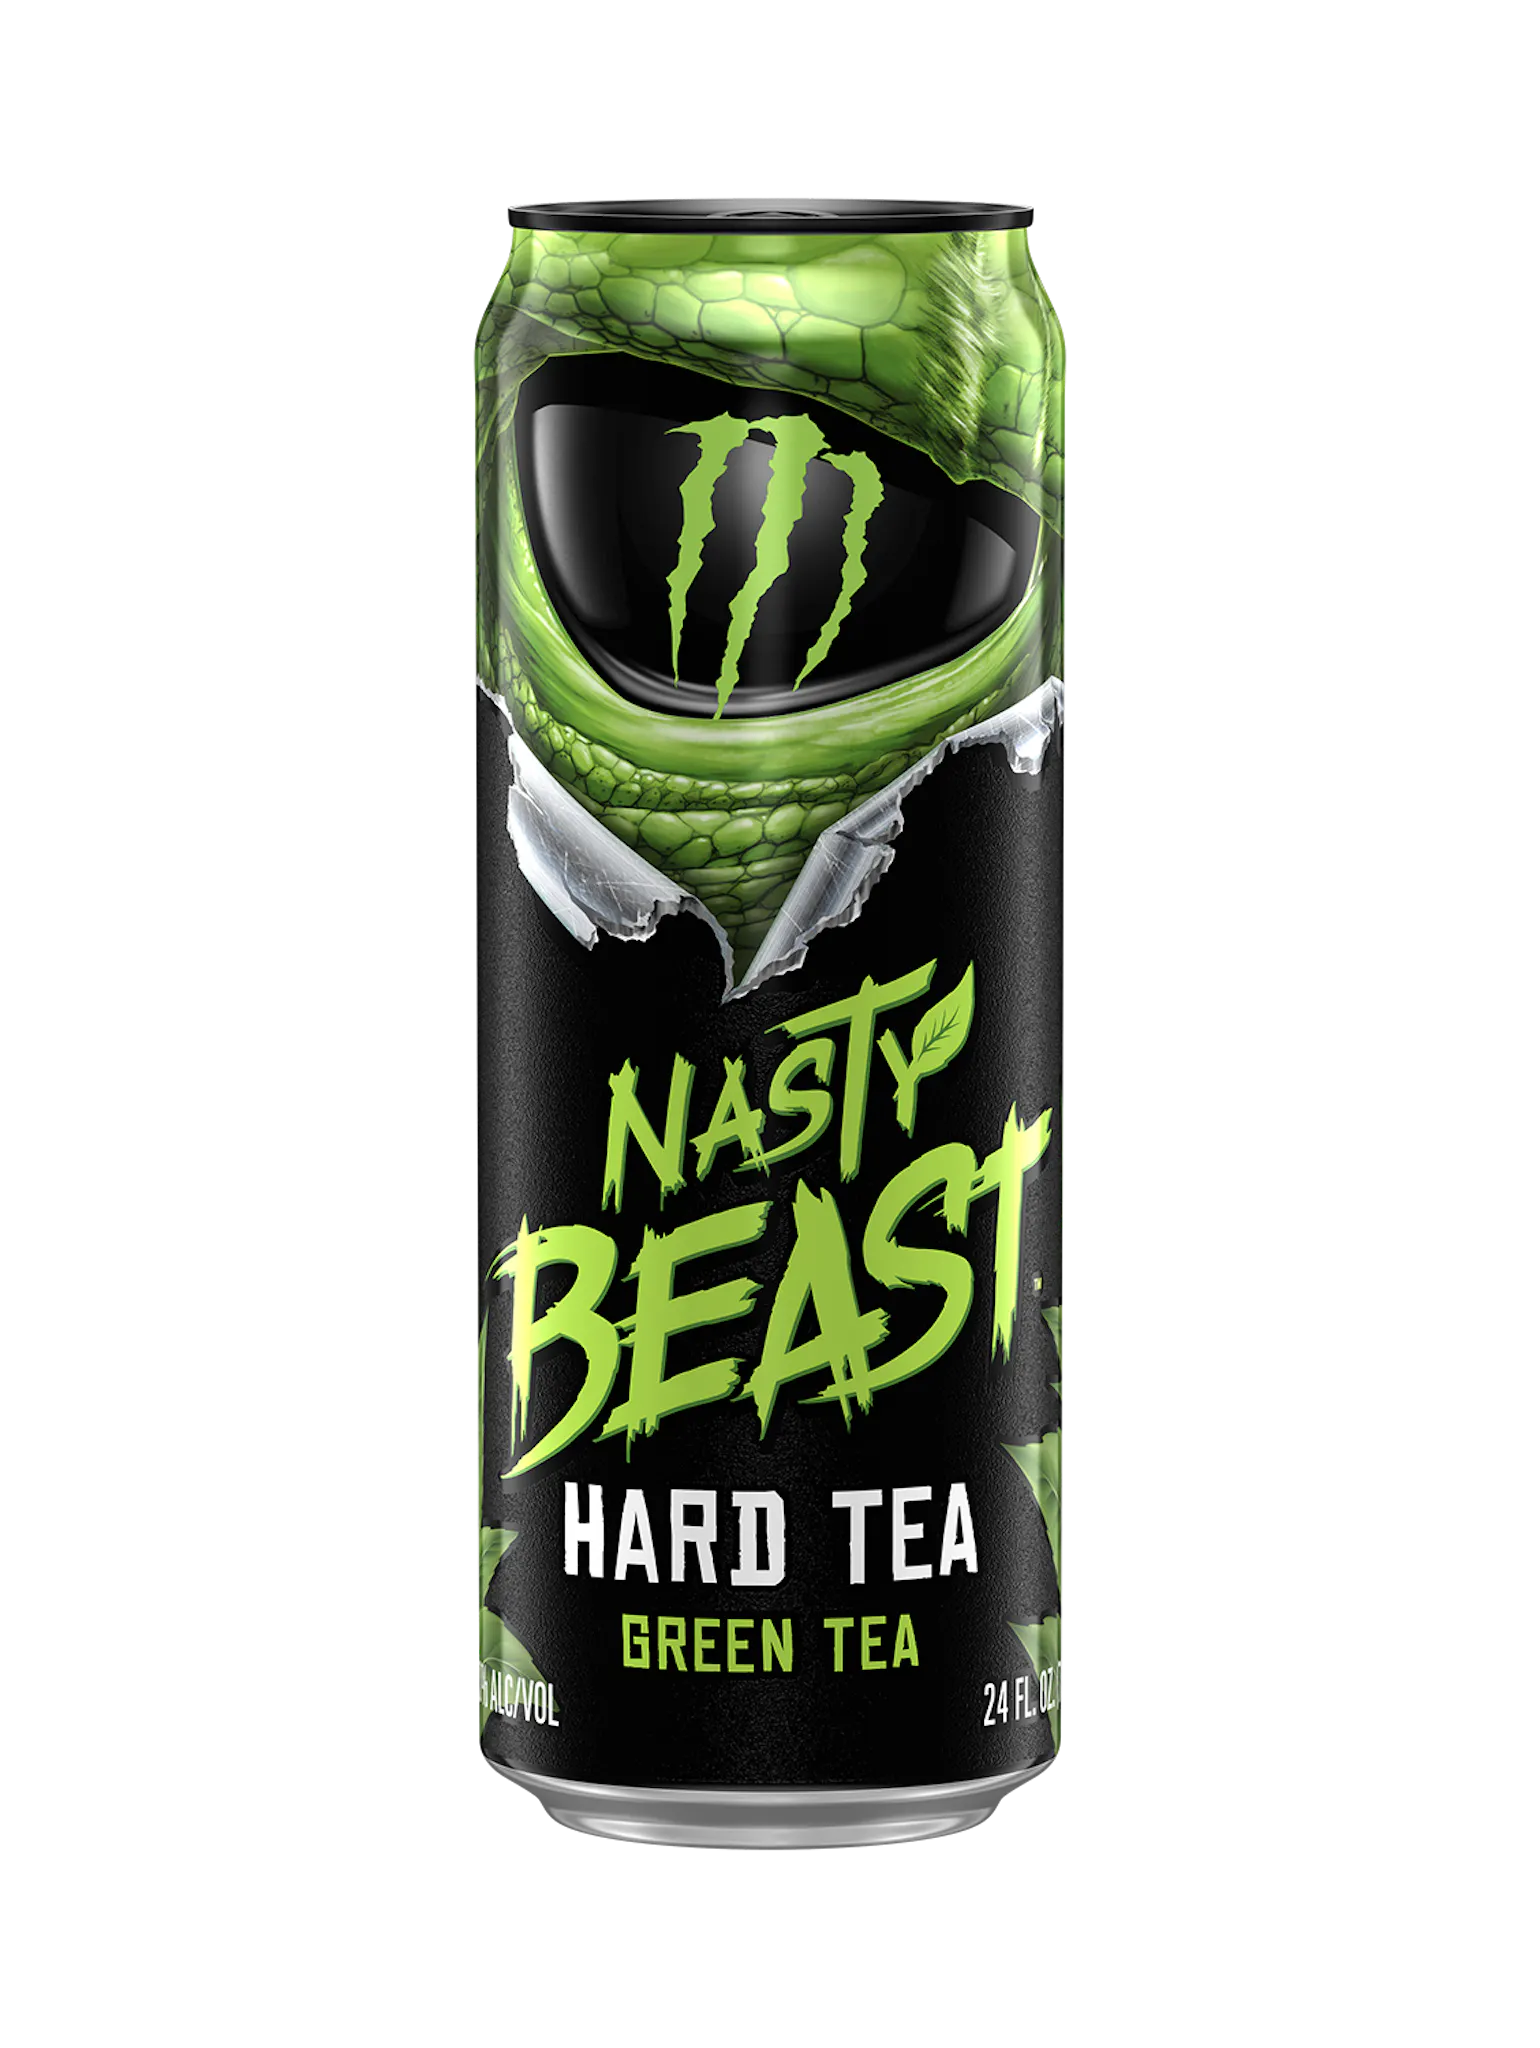 Monster Nasty Beast Hard Tea Green Tea 710 ml FULL beast beast unleashed beast24 hard tea monster monster energy nasty nasty beast not-on-sale unleashed usa